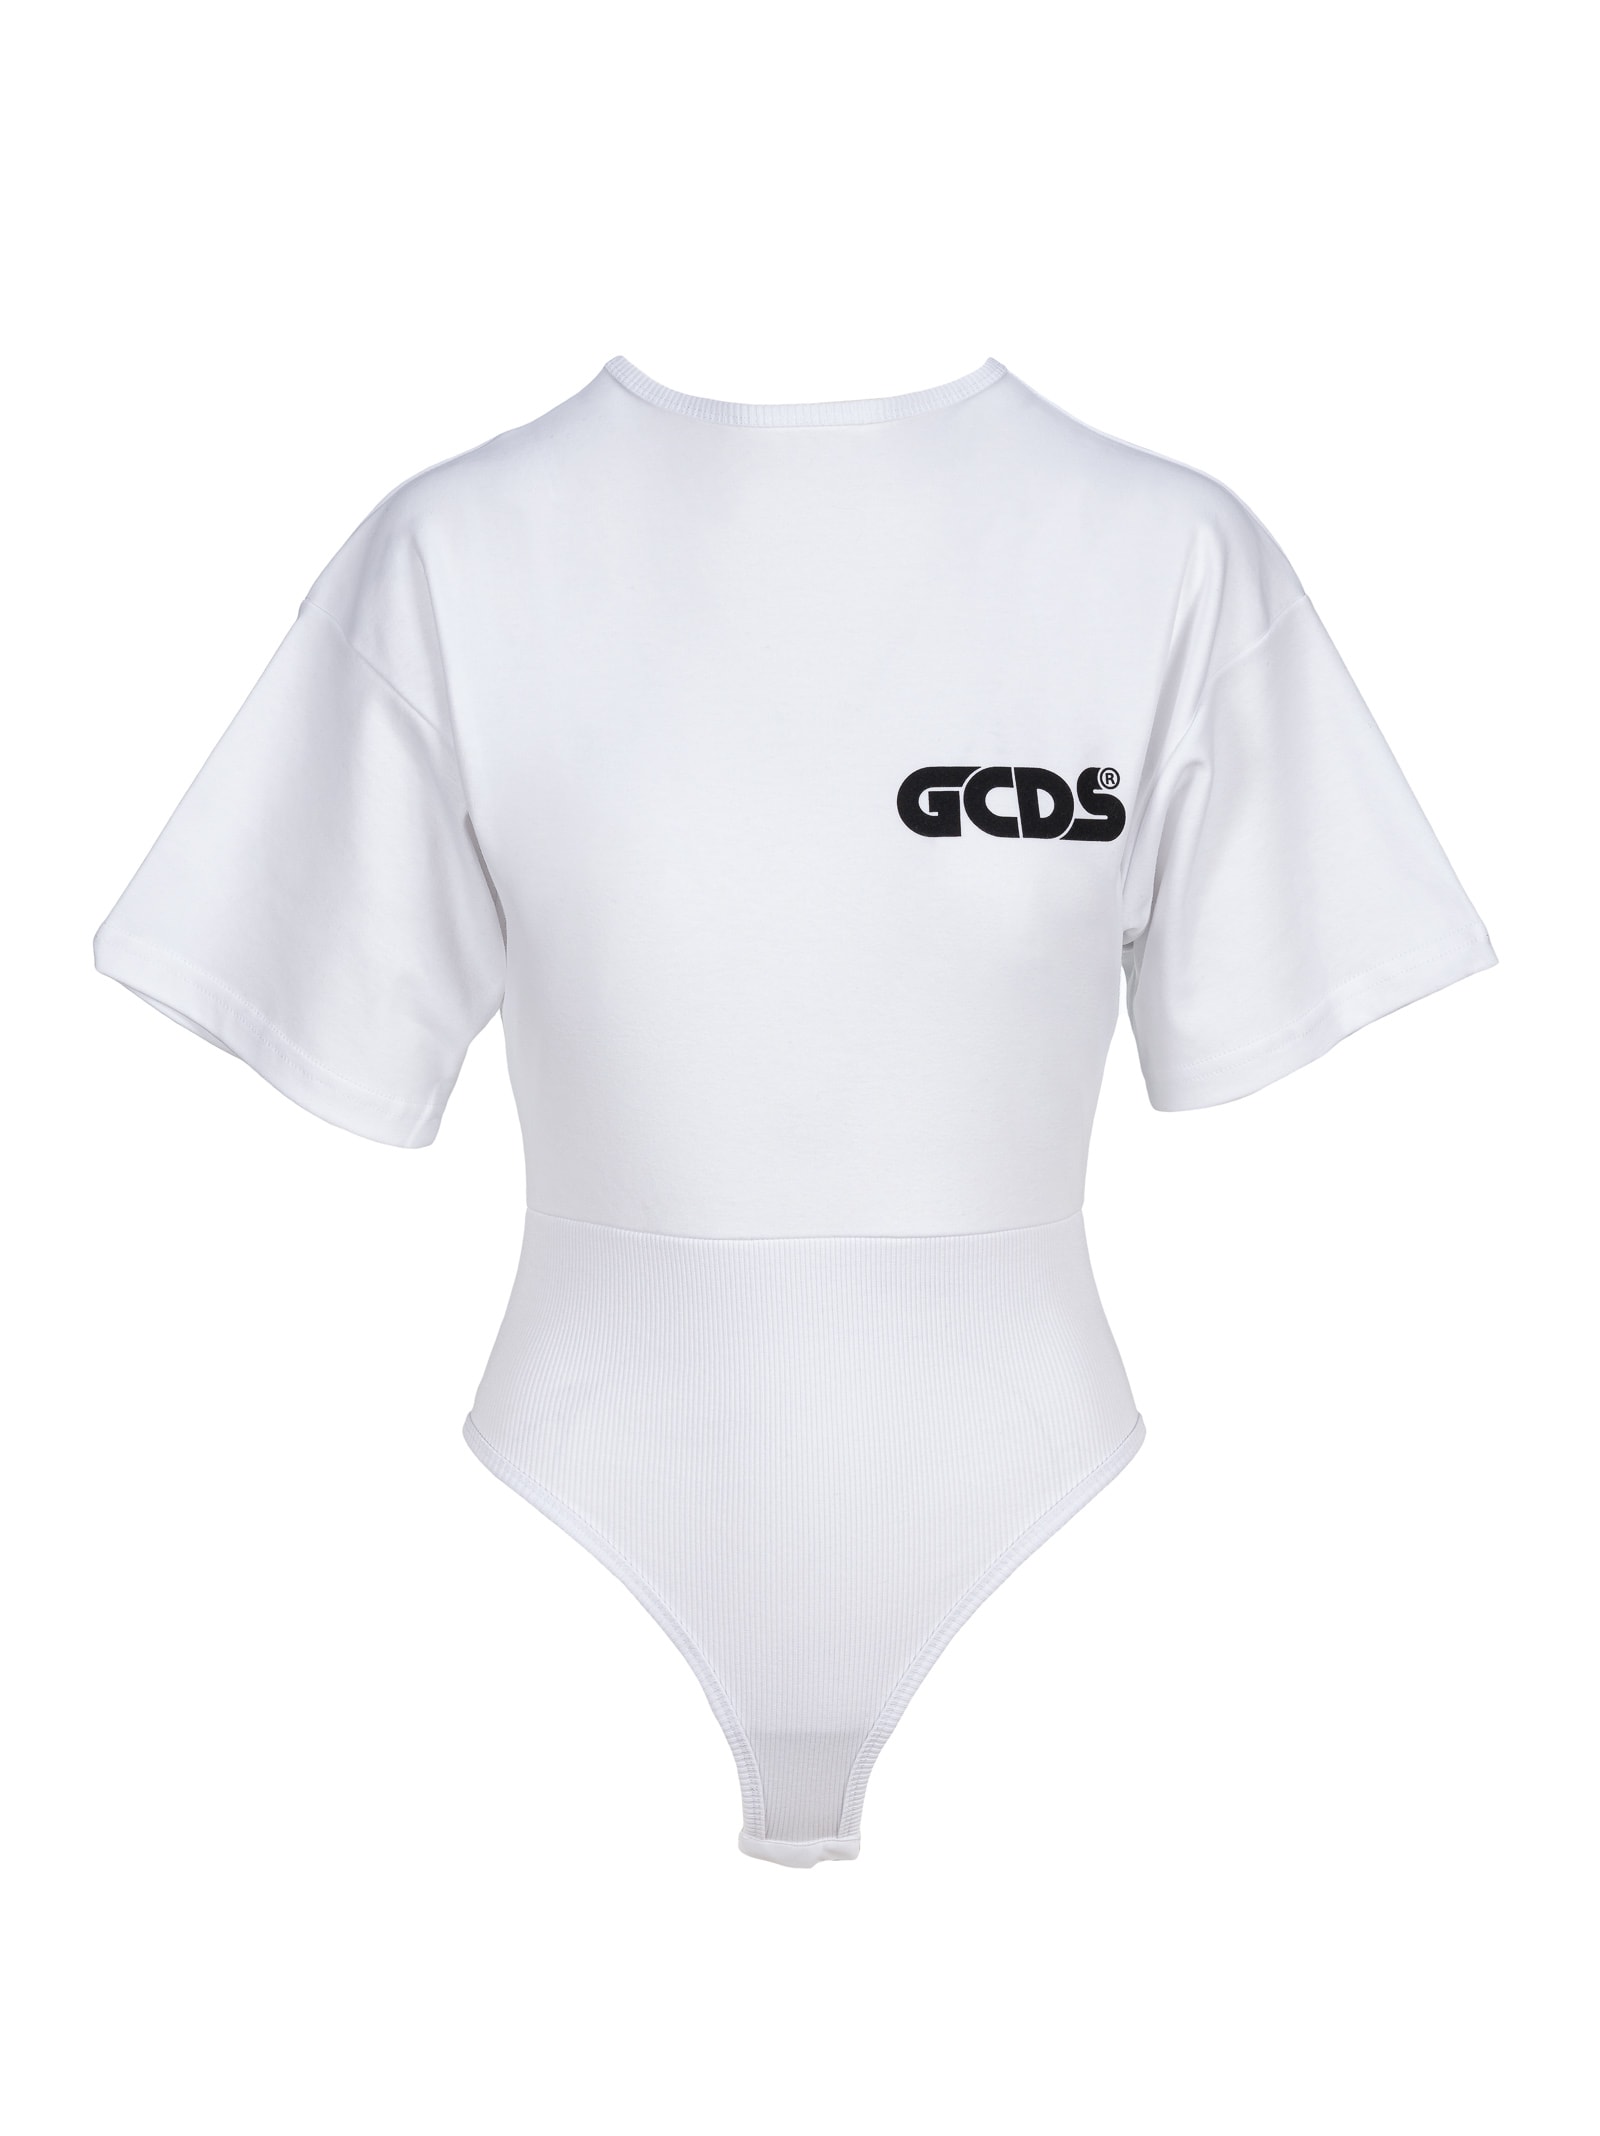 Gcds Gilda Bodysuit With Gcds Roundy Logo